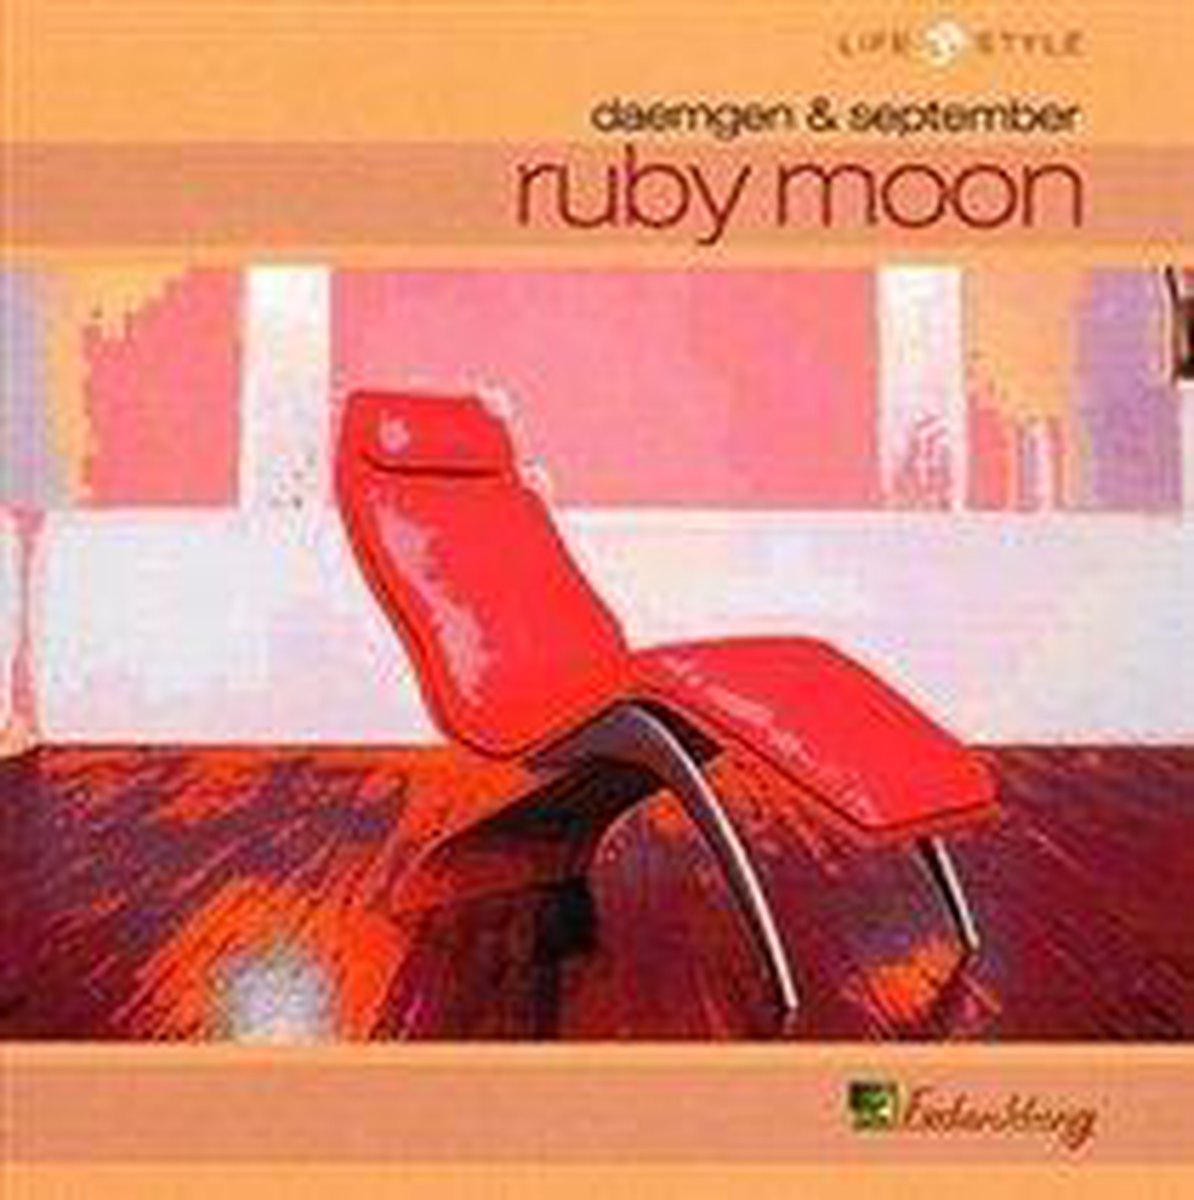 Ruby Moon - Daemgen & September